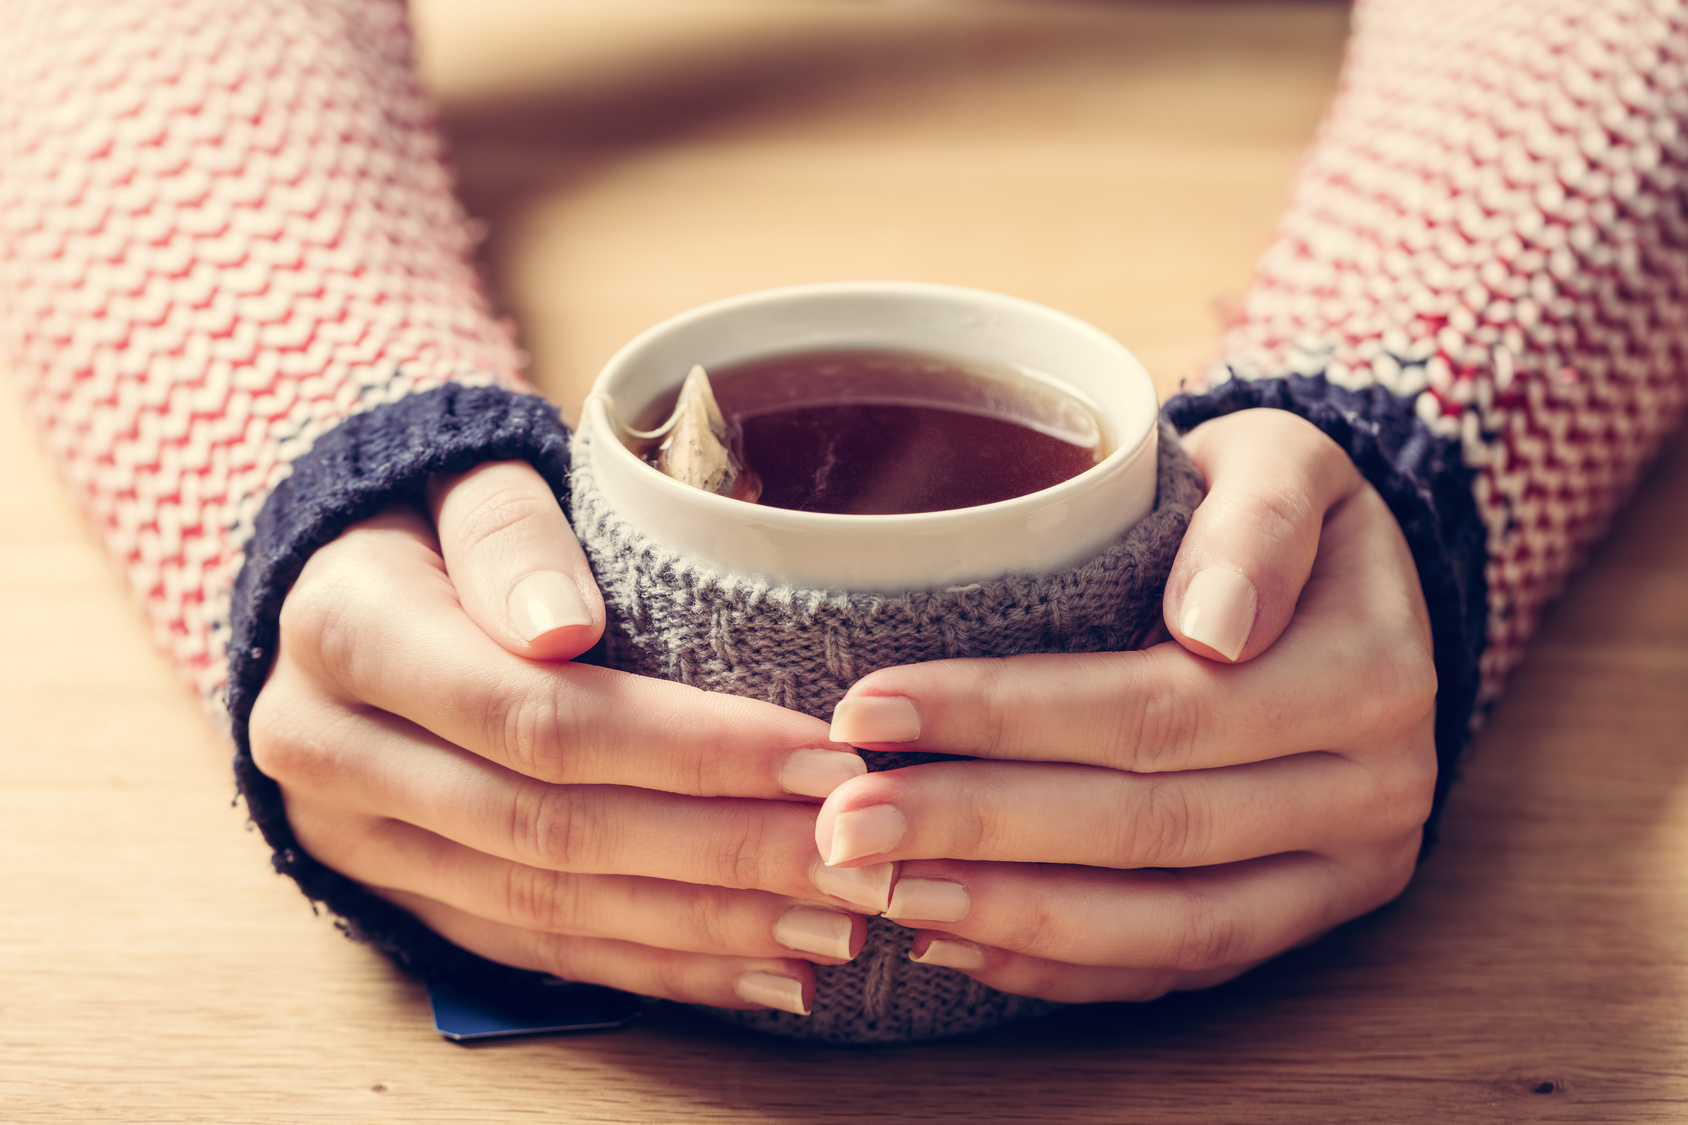 Hot mug of tea warming woman's hands in retro woollen jumper. Wooden table